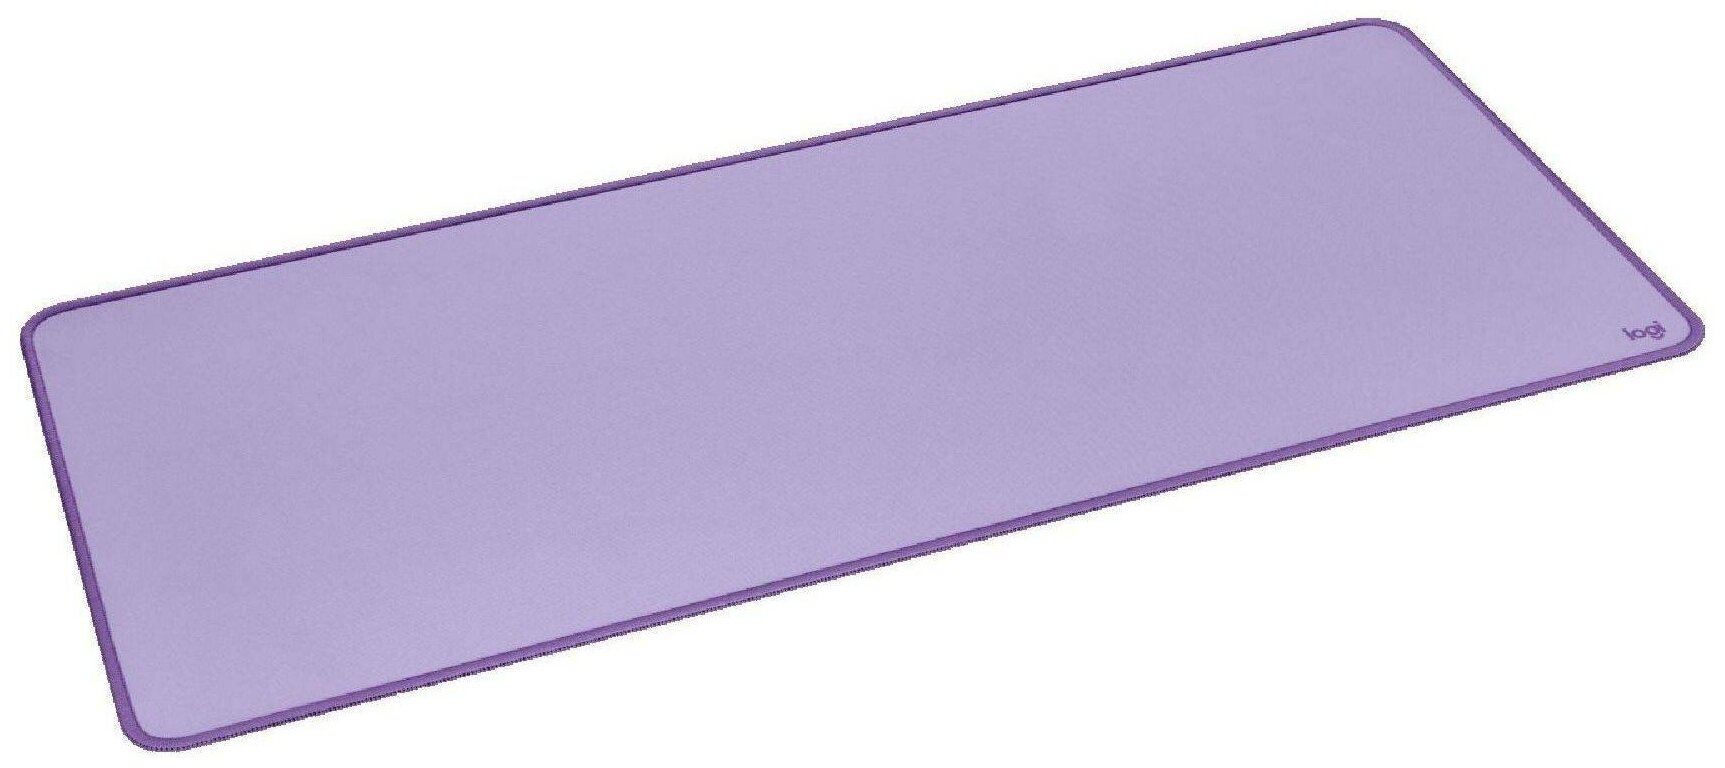 Коврик для мыши Logitech Studio Desk Mat Средний фиолетовый 700x2x300мм